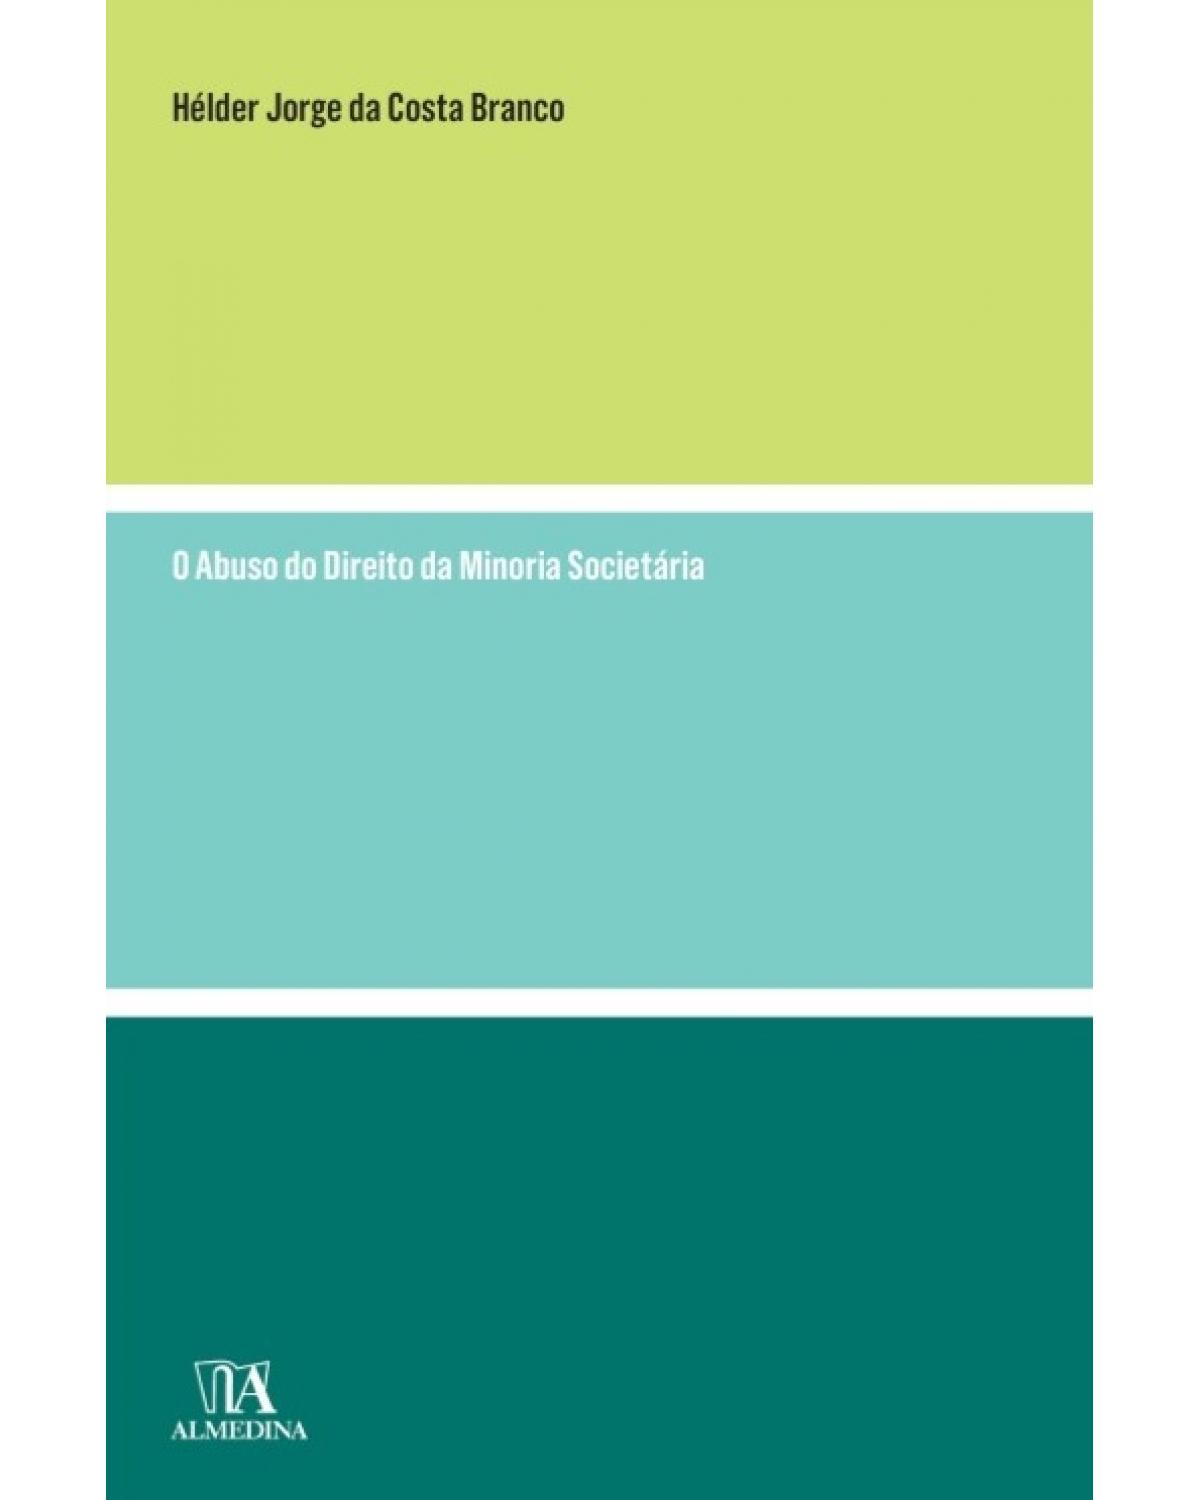 O abuso do direito da minoria societária - 1ª Edição | 2014